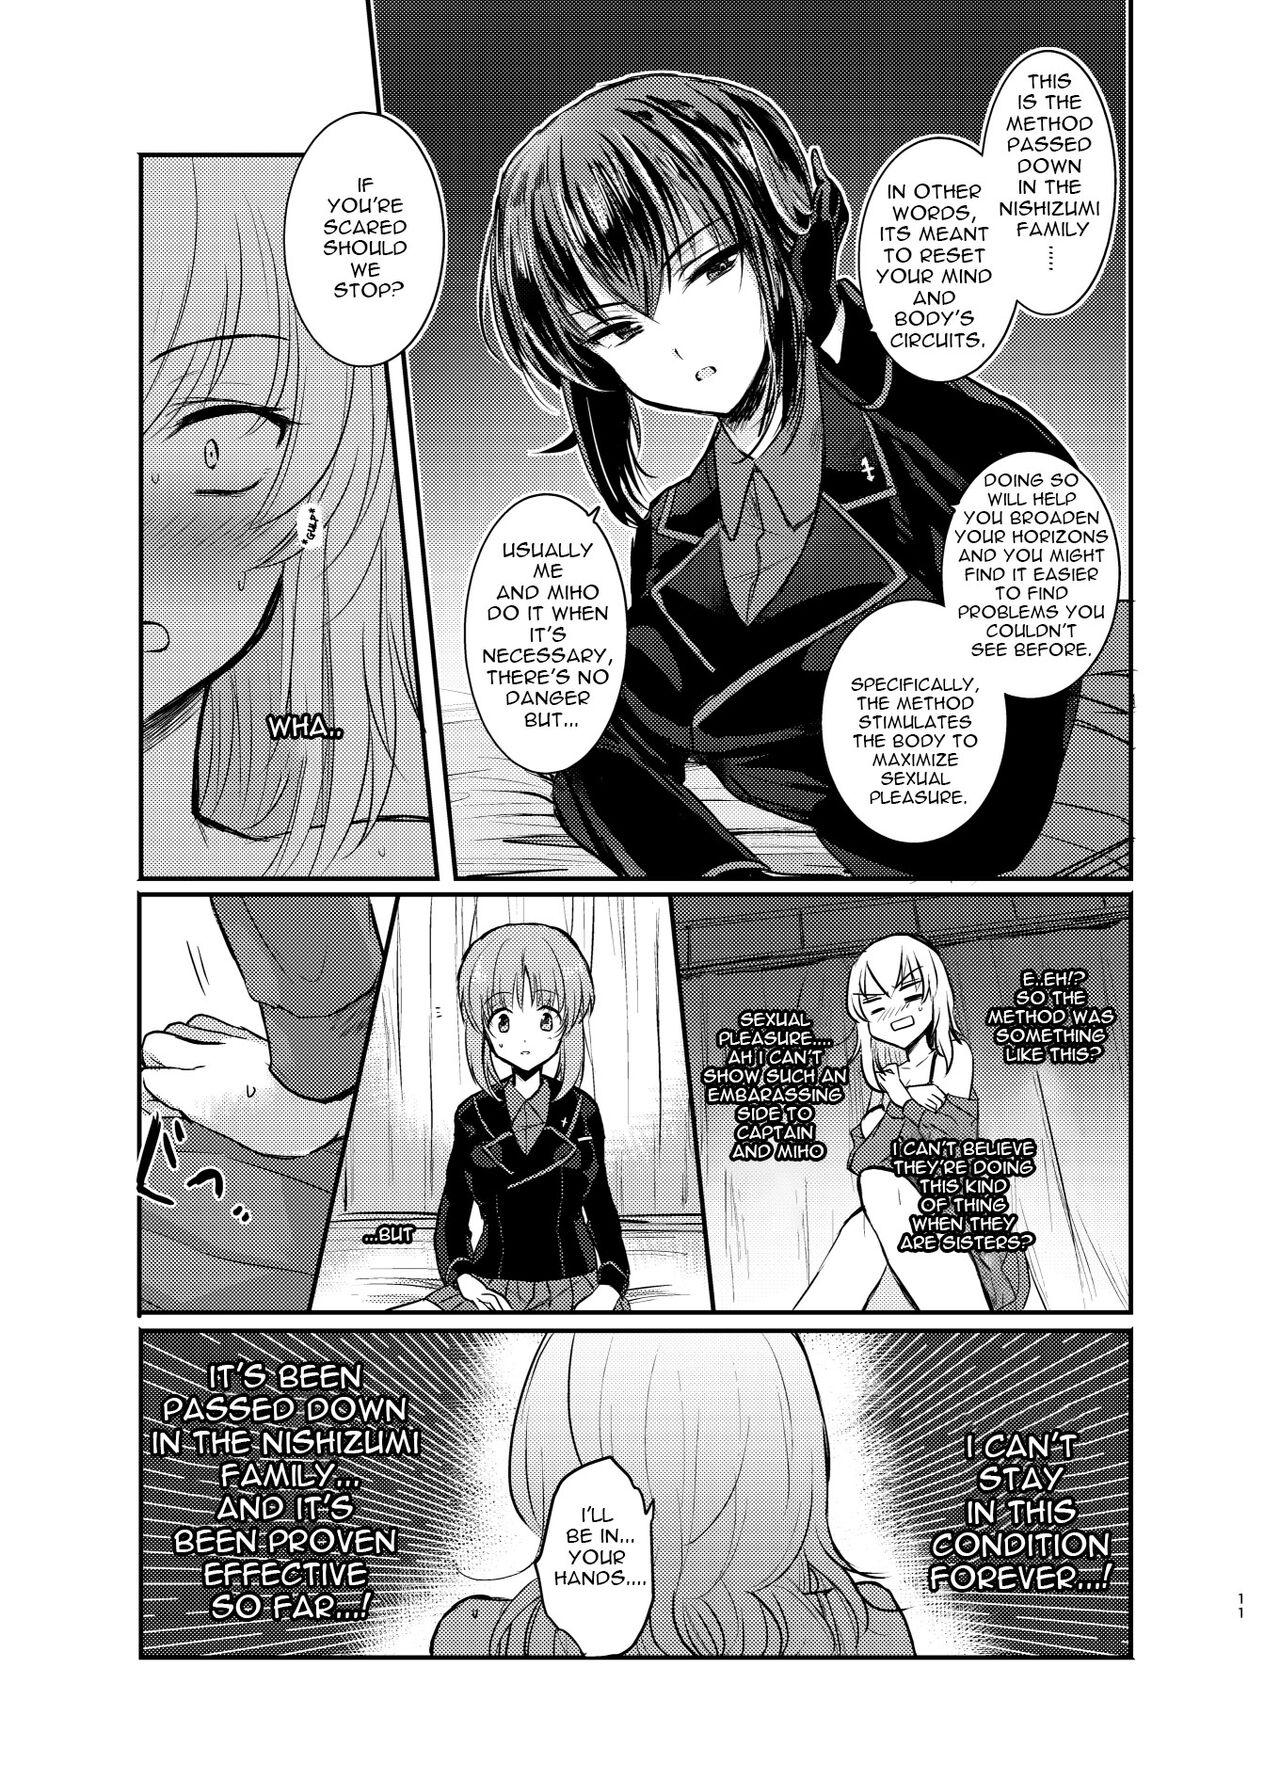 Naked Nishizumi Refre - Girls und panzer Softcore - Page 11